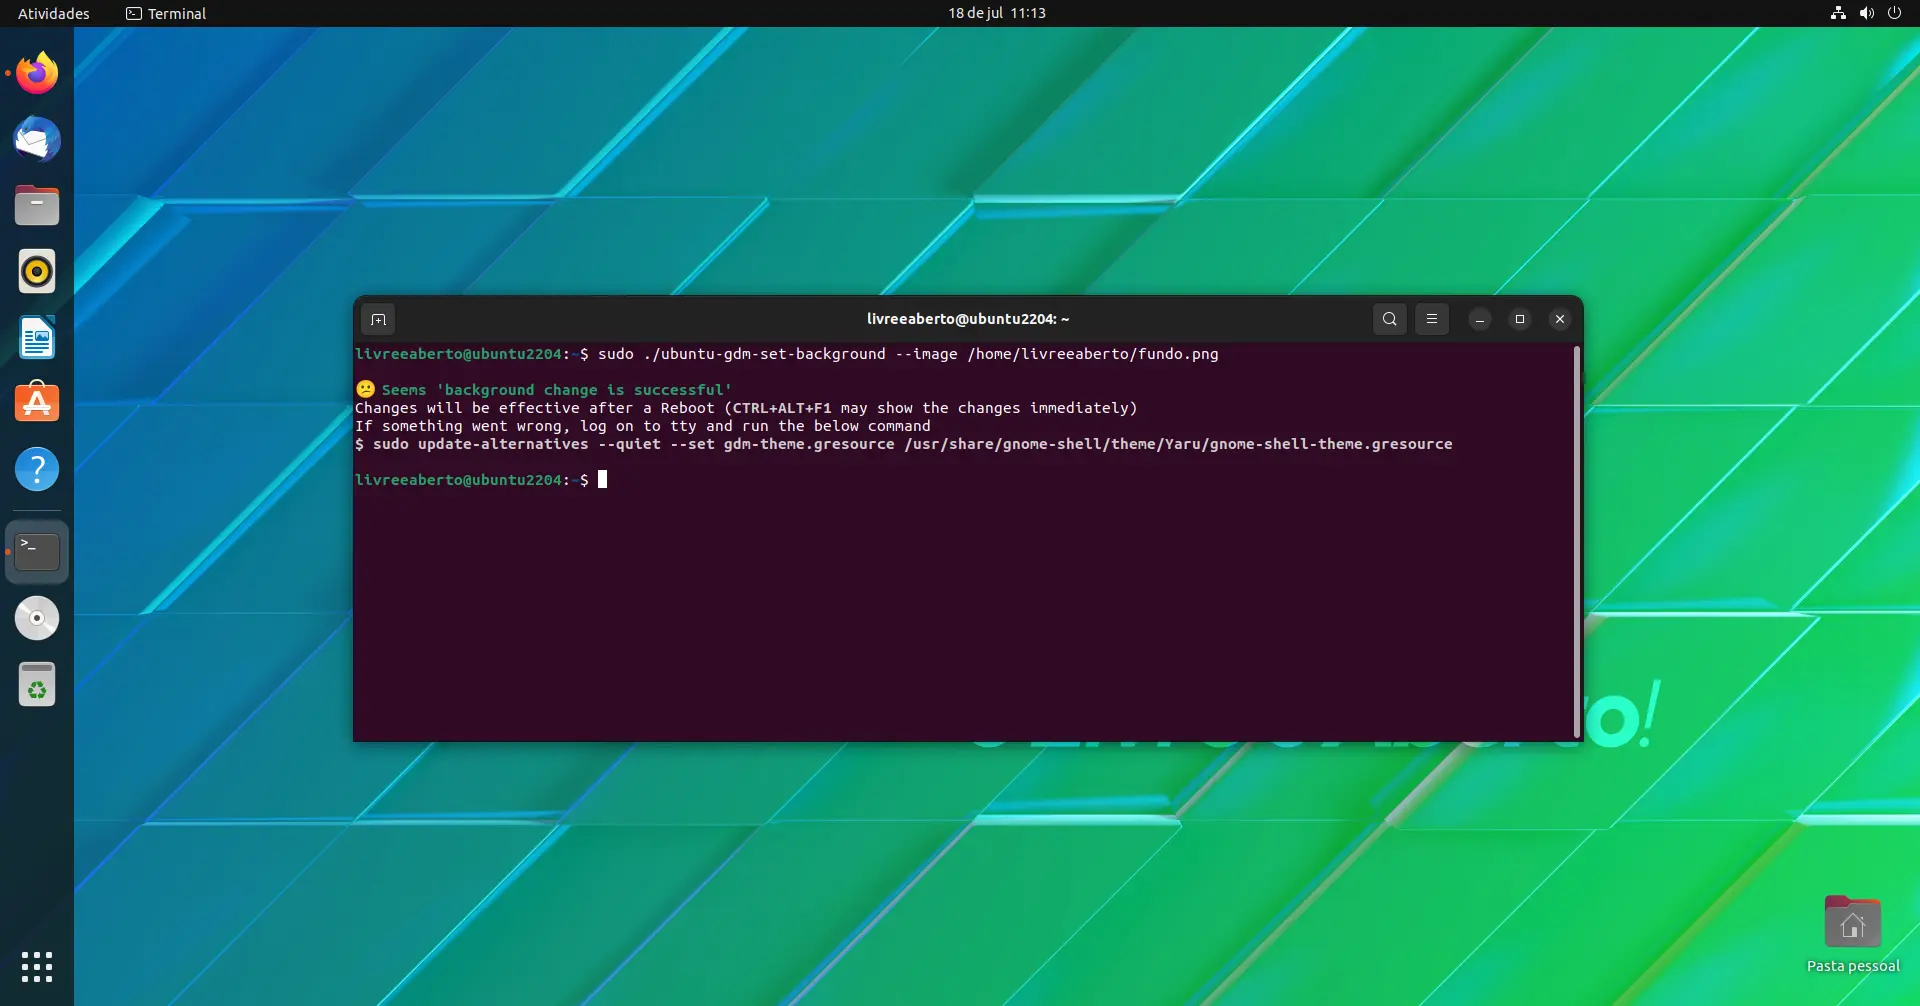 Mensagem de sucesso ao alterar o fundo da tela de login do Ubuntu